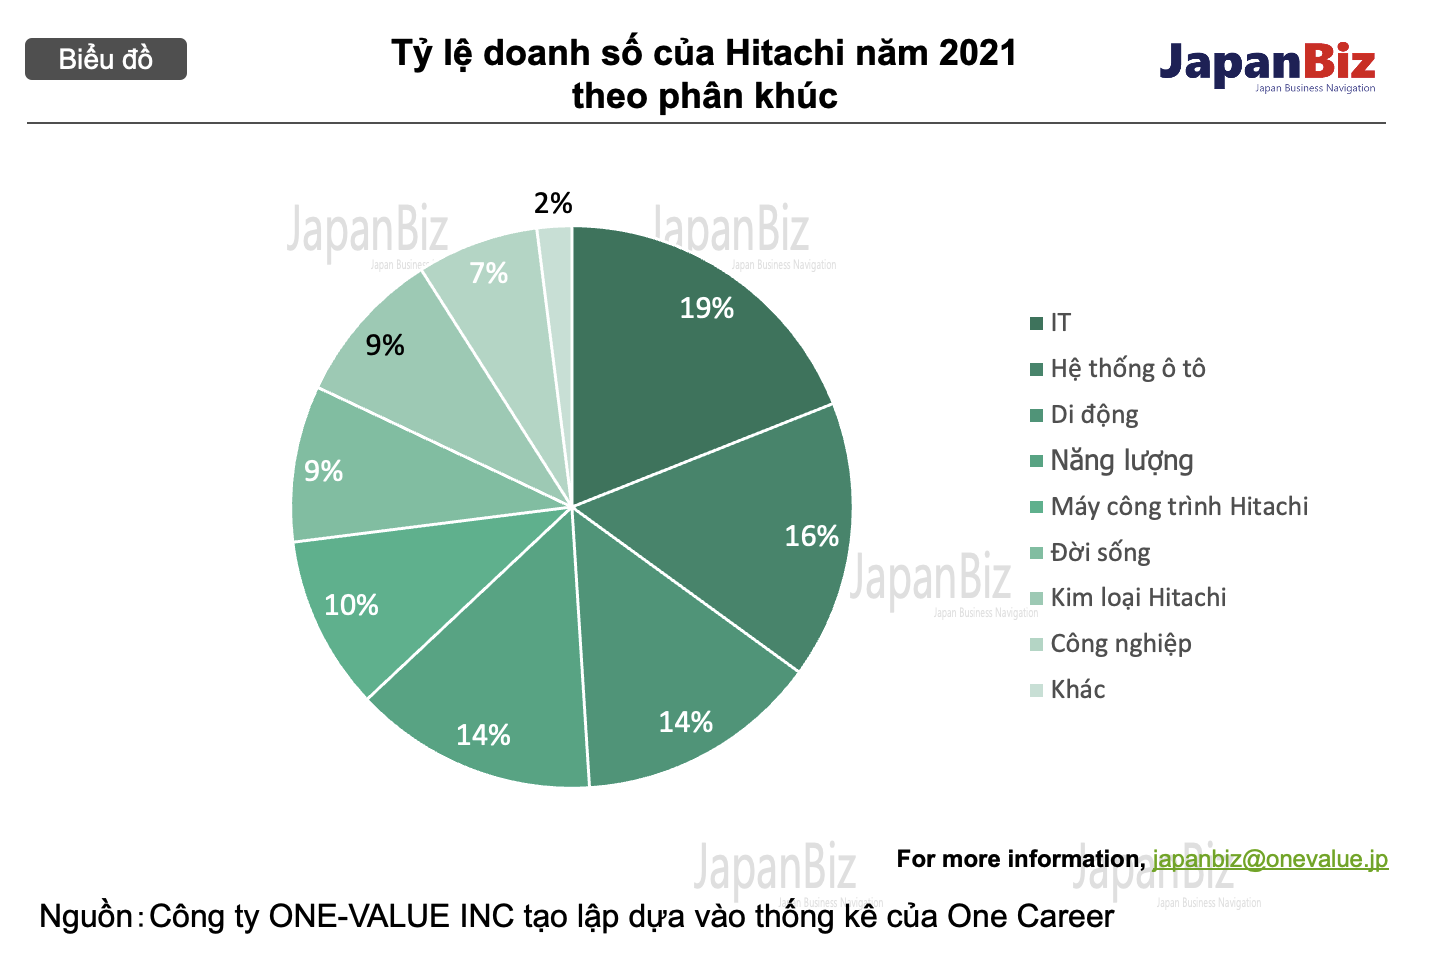 Tỷ lệ doanh số của Hitachi năm 2021 theo phân khúc